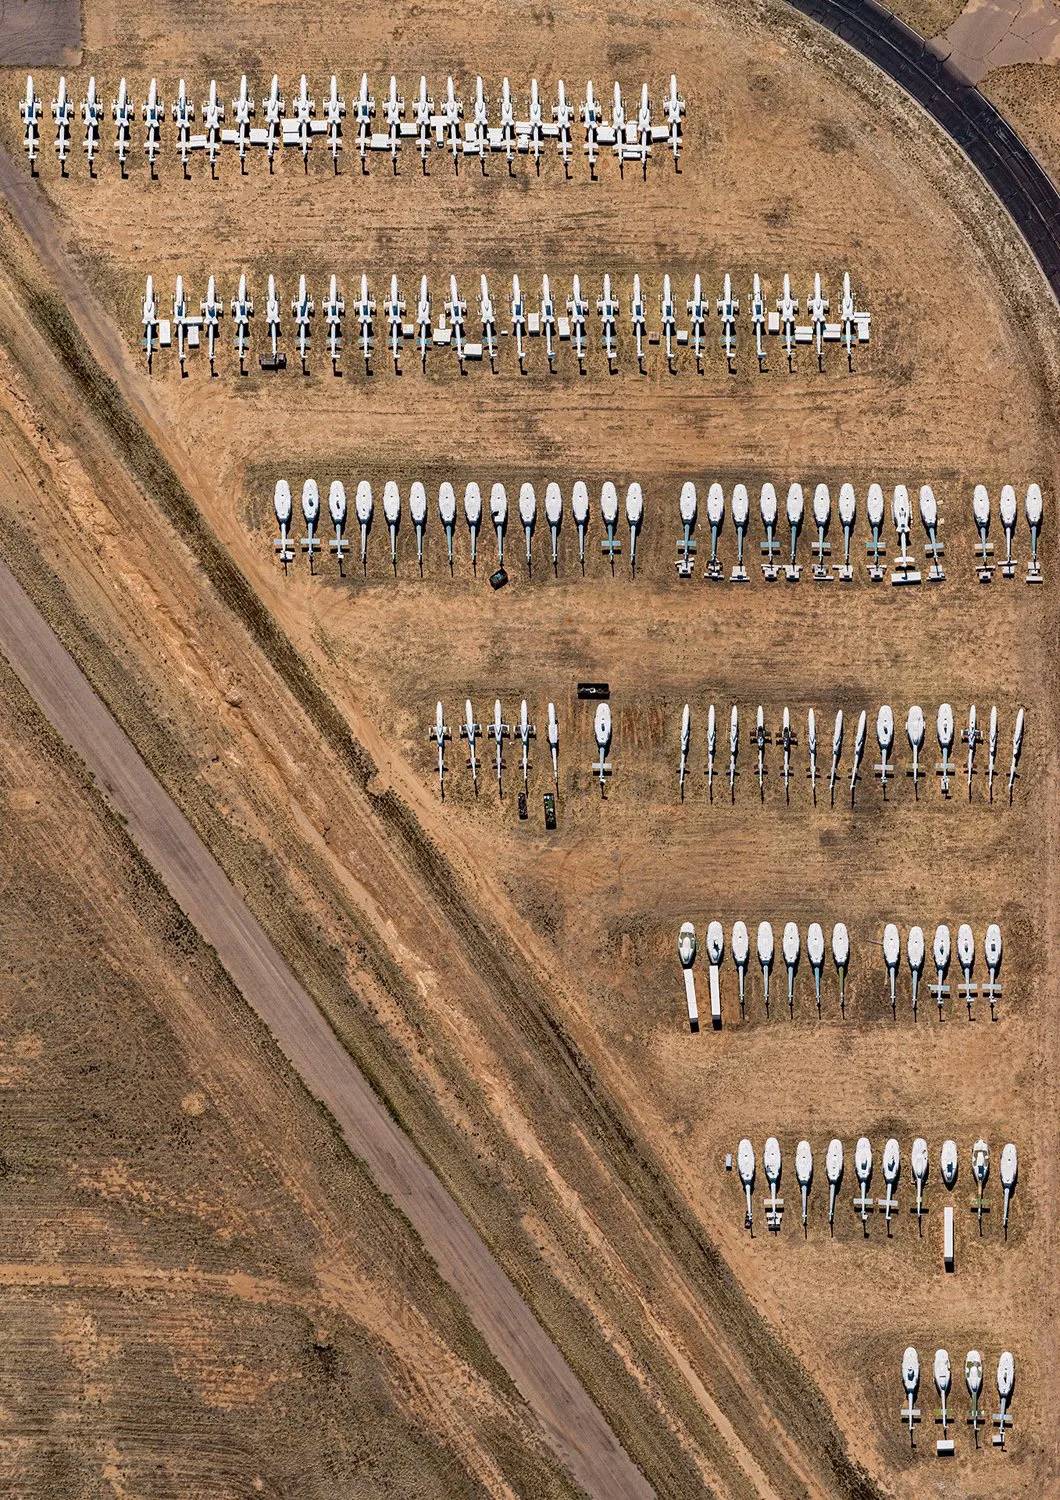 Hàng nghìn máy bay quân sự bị bỏ rơi